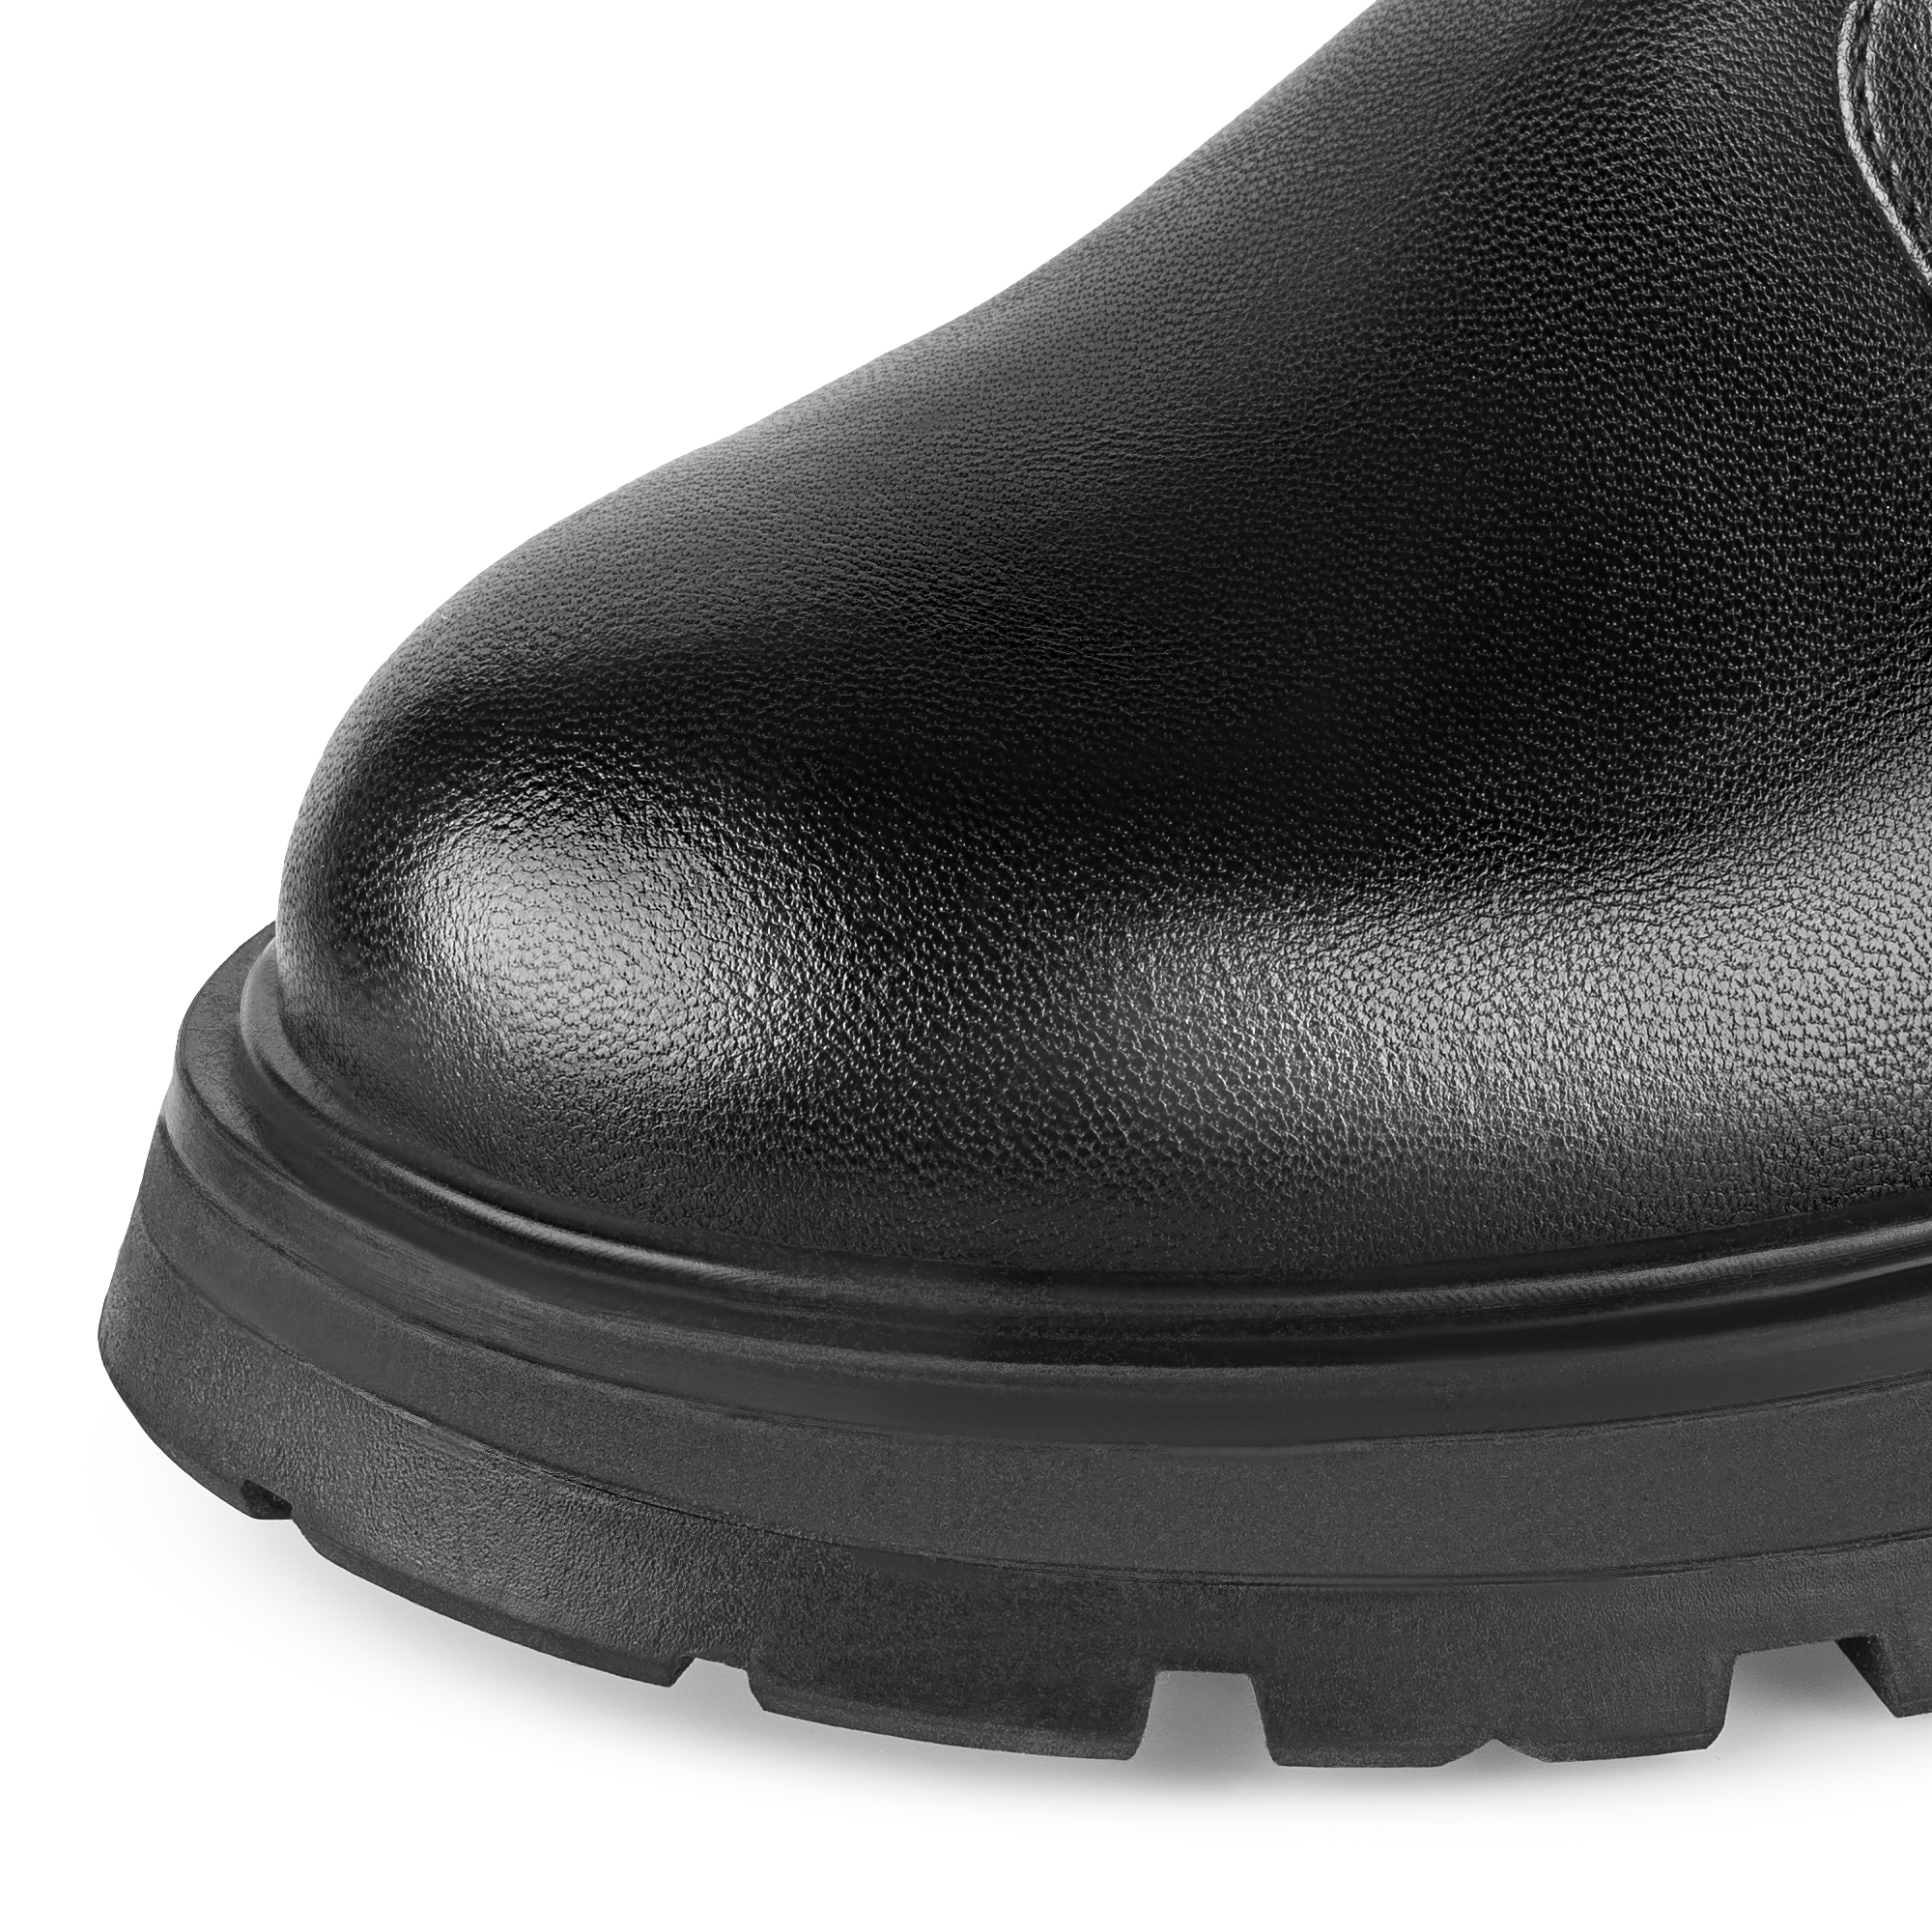 Ботинки Thomas Munz 102-196A-5602, цвет черный, размер 36 - фото 6